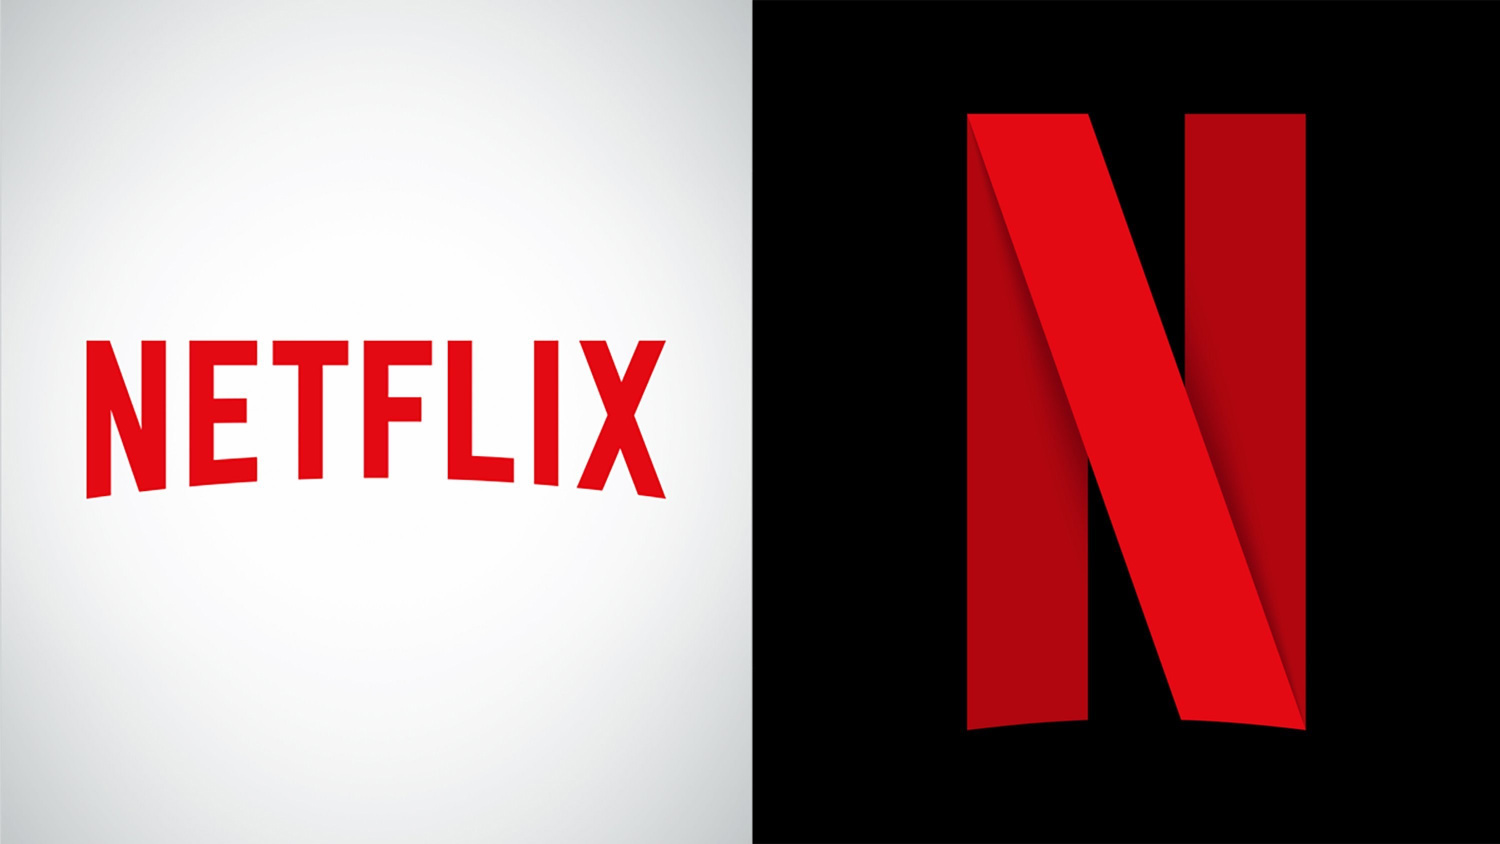 迪士尼宣布将结束与 Netflix 的合作，这对 Netflix 的用户来说是损失但其实也还好 | 理想生活实验室 - 为更理想的生活